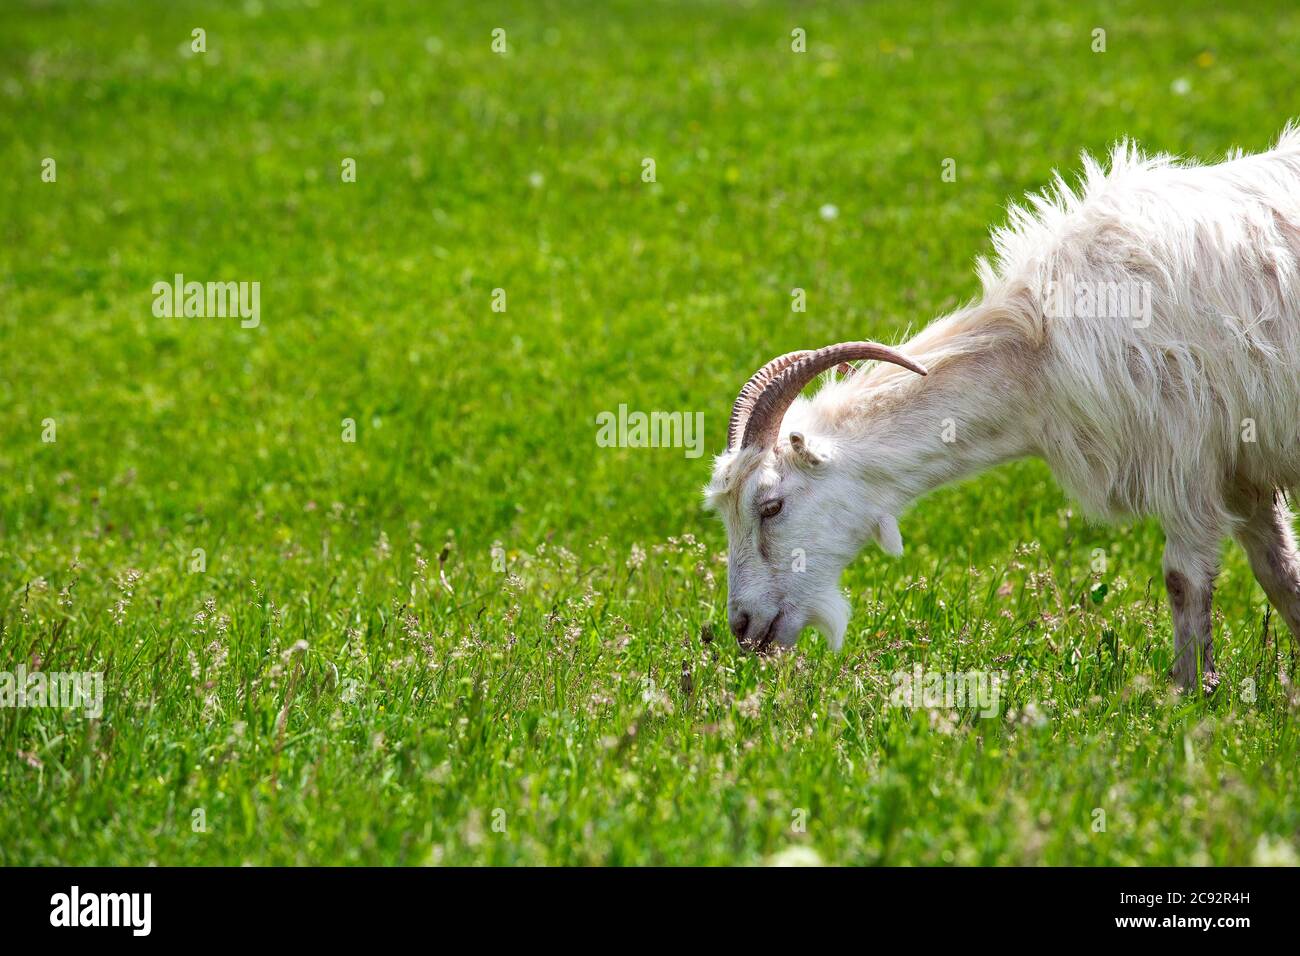 la cabra blanca de cuernos come una hierba verde, en los derechos de un caret de un tiro. Foto de stock